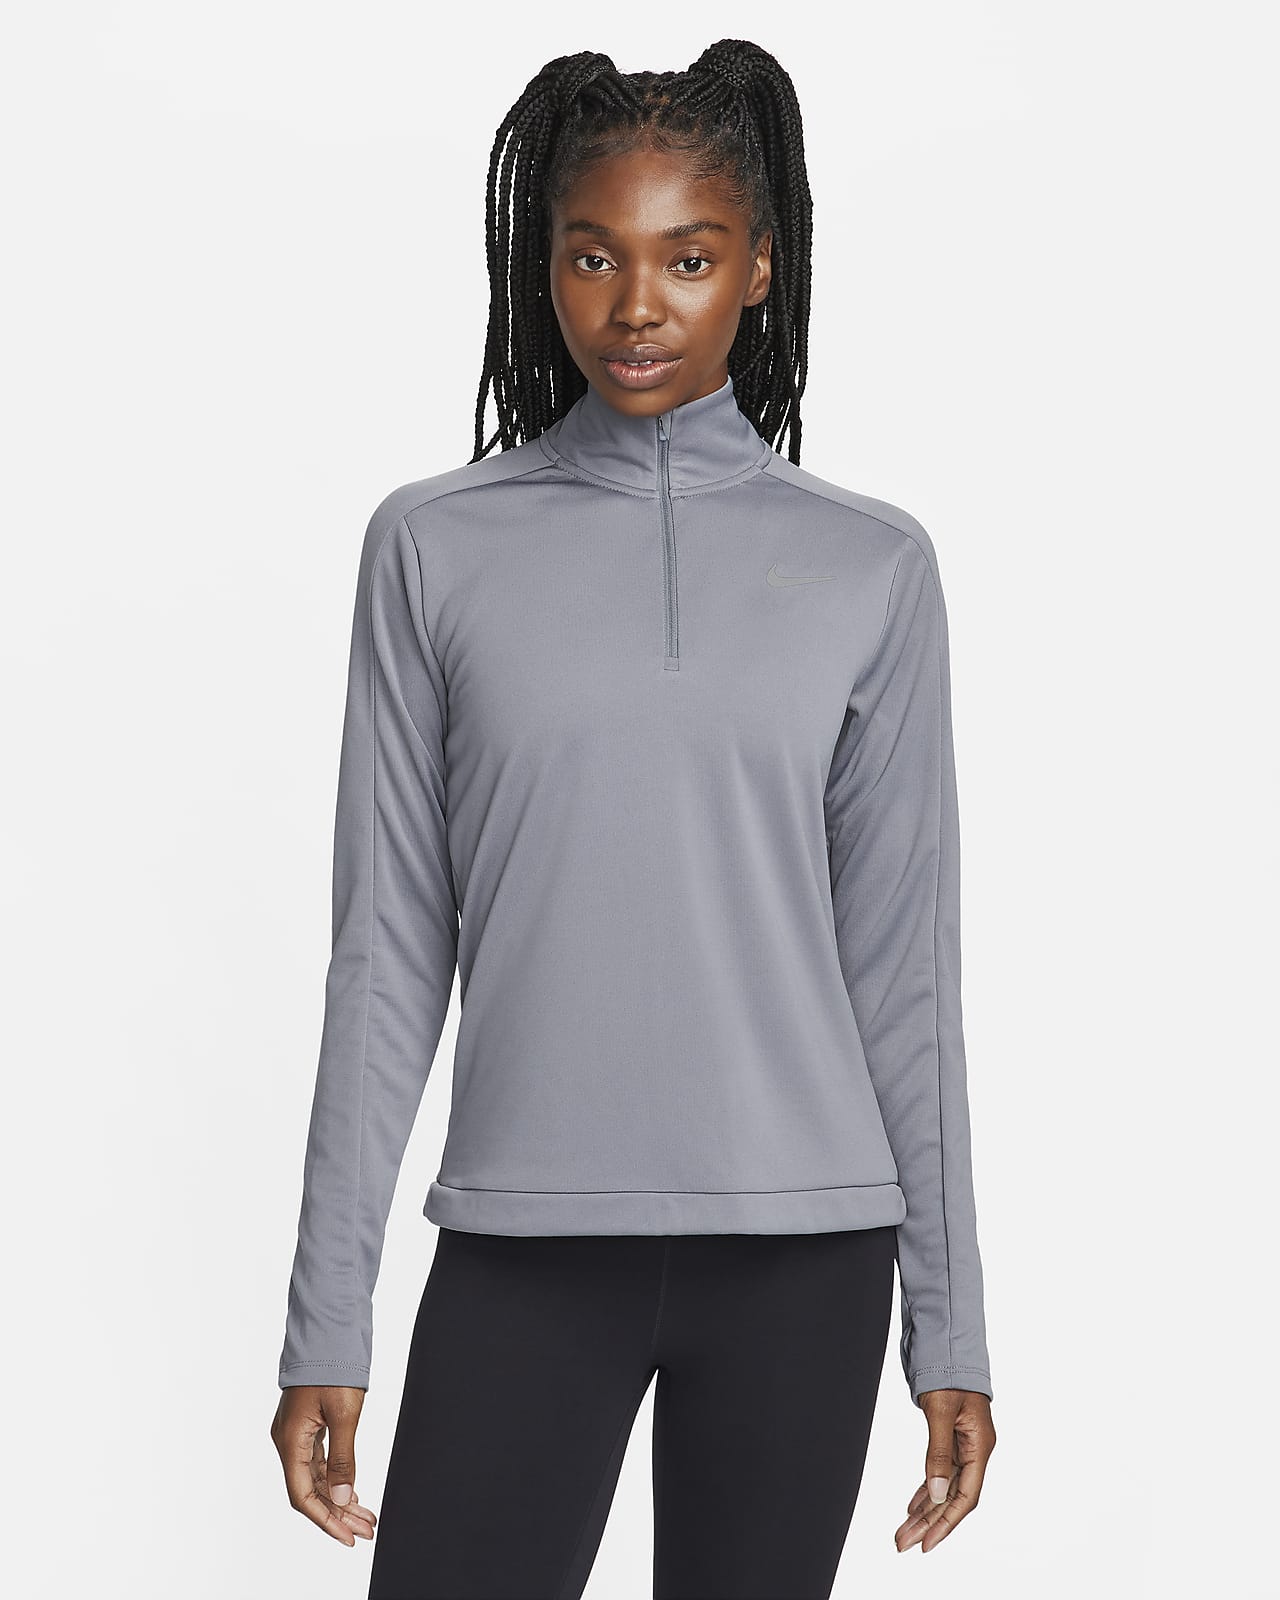 Nike Dri-FIT Pacer Çeyrek Fermuarlı Kadın Sweatshirt'ü